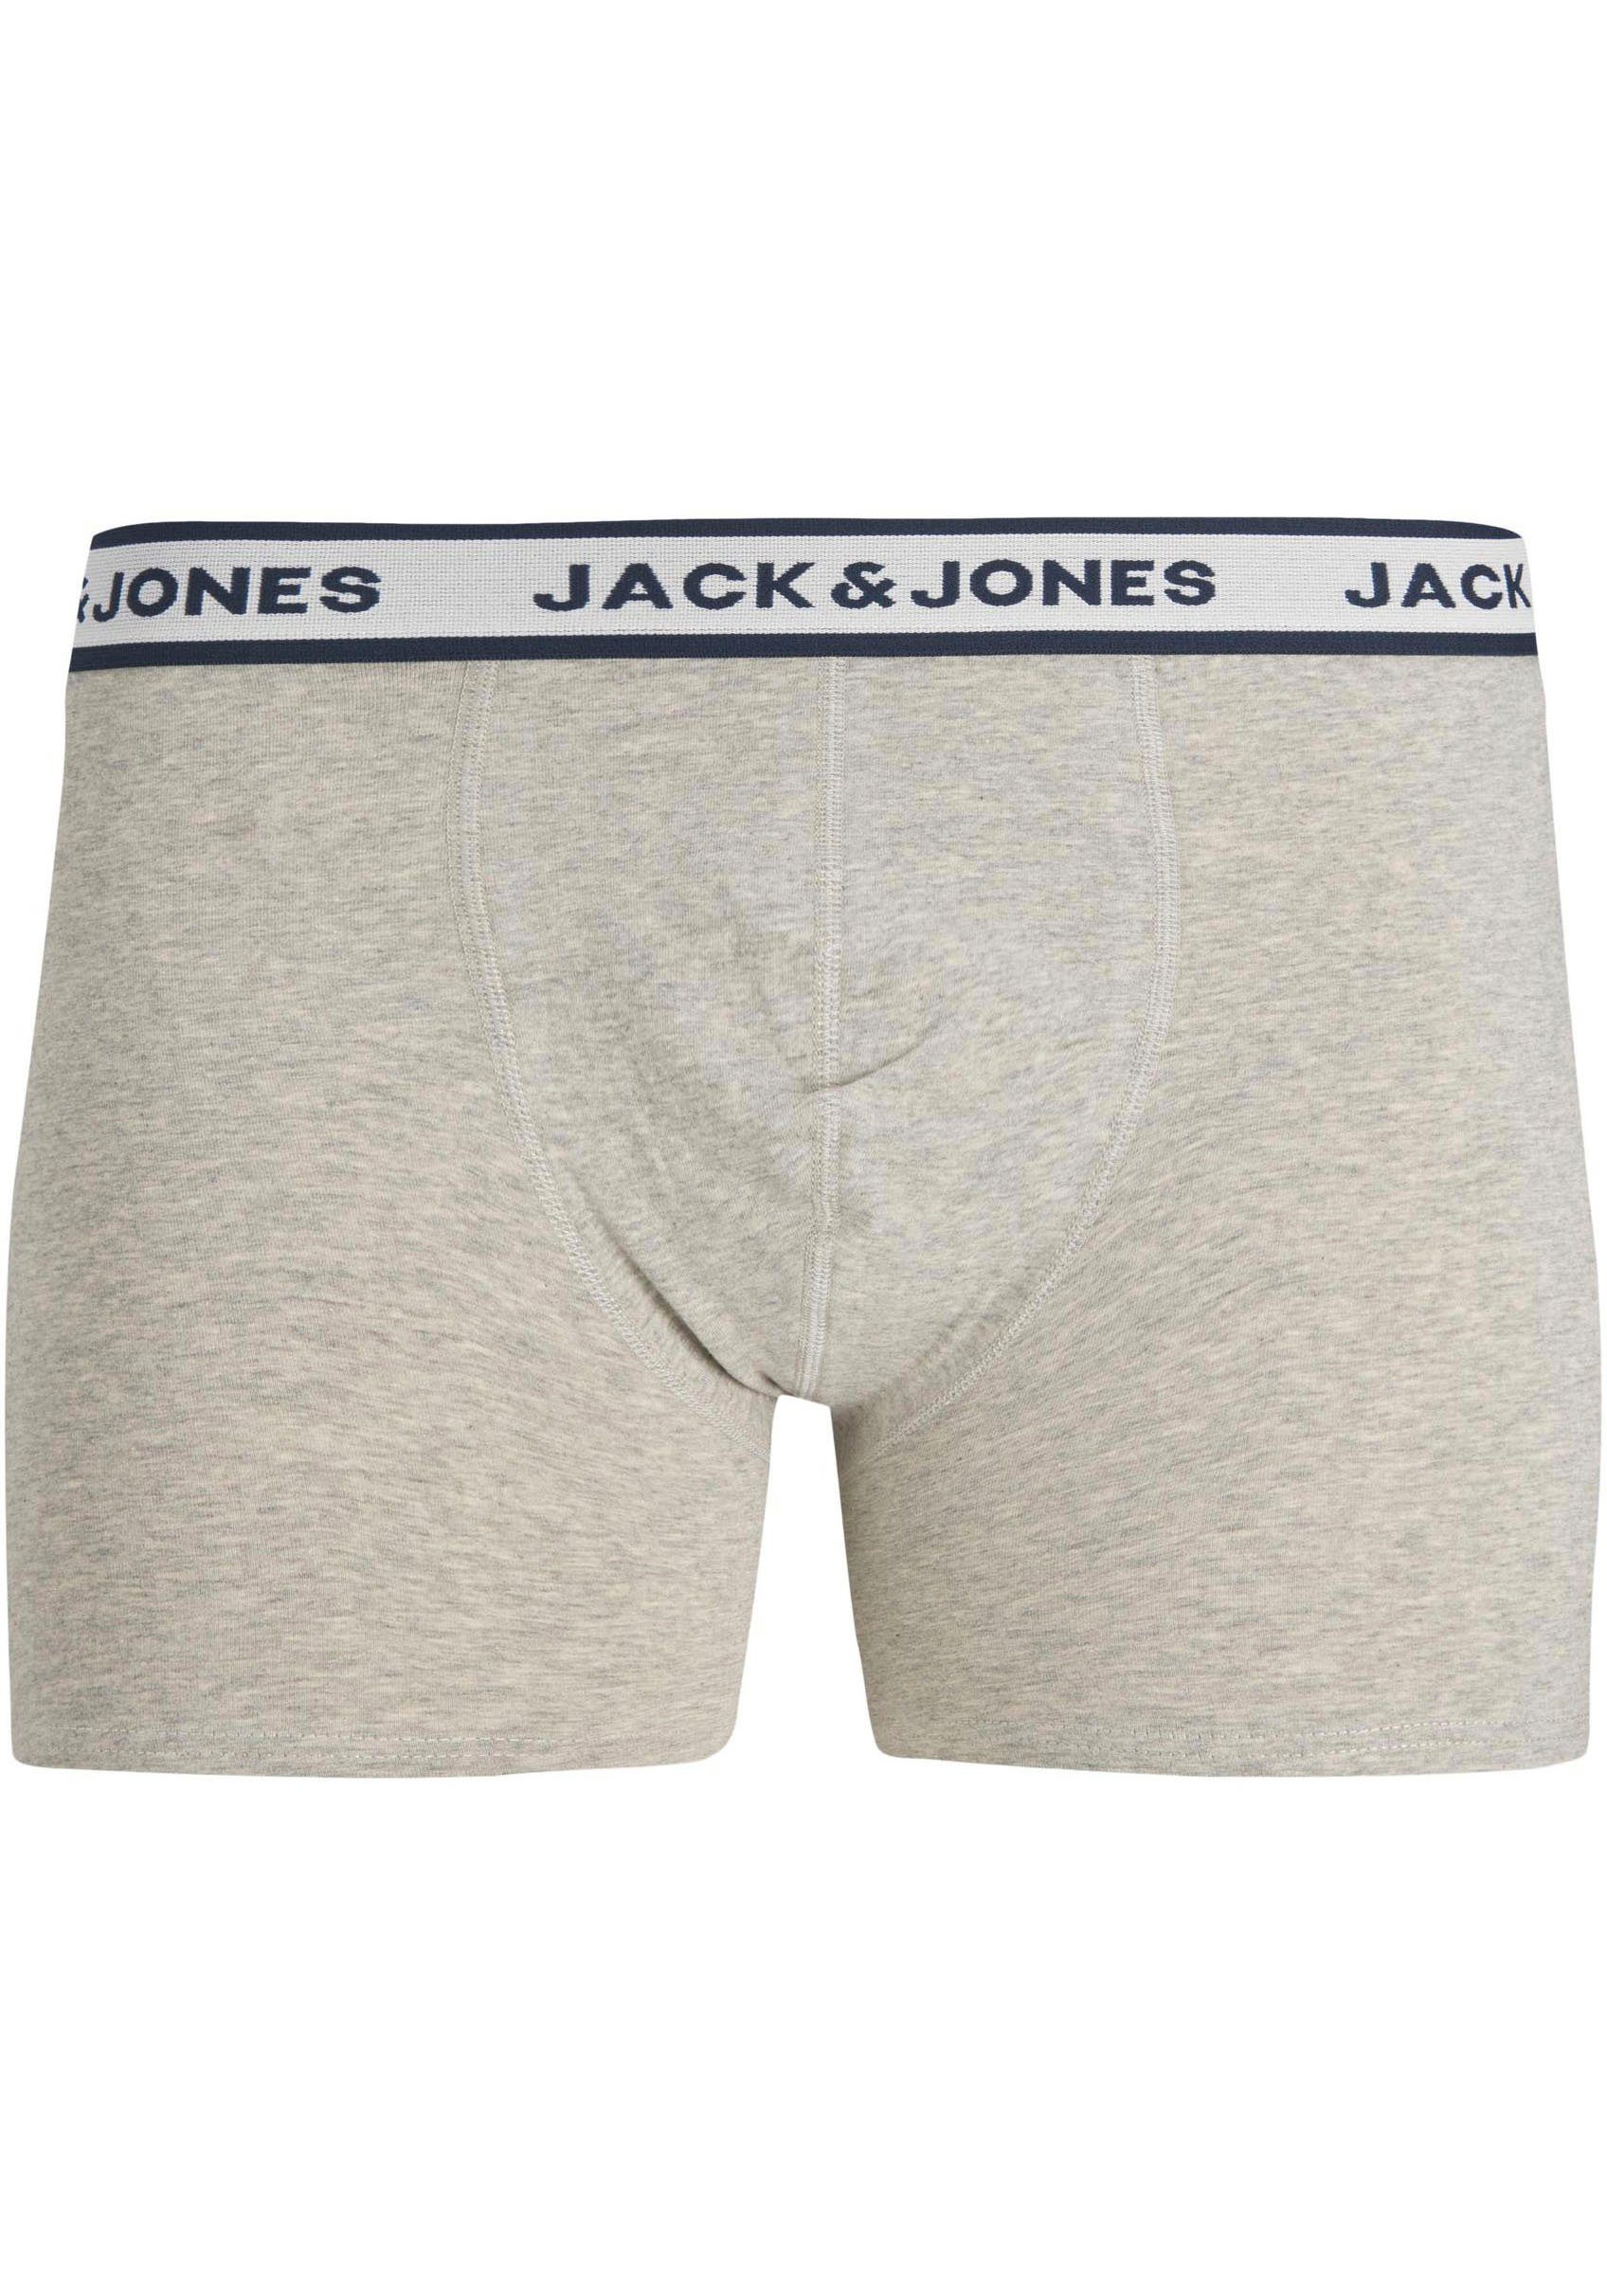 Jack & Jones Boxershorts JACSOLID Grey BRIEFS Melange 3-St) PACK 3 Light BOXER NOOS (Packung